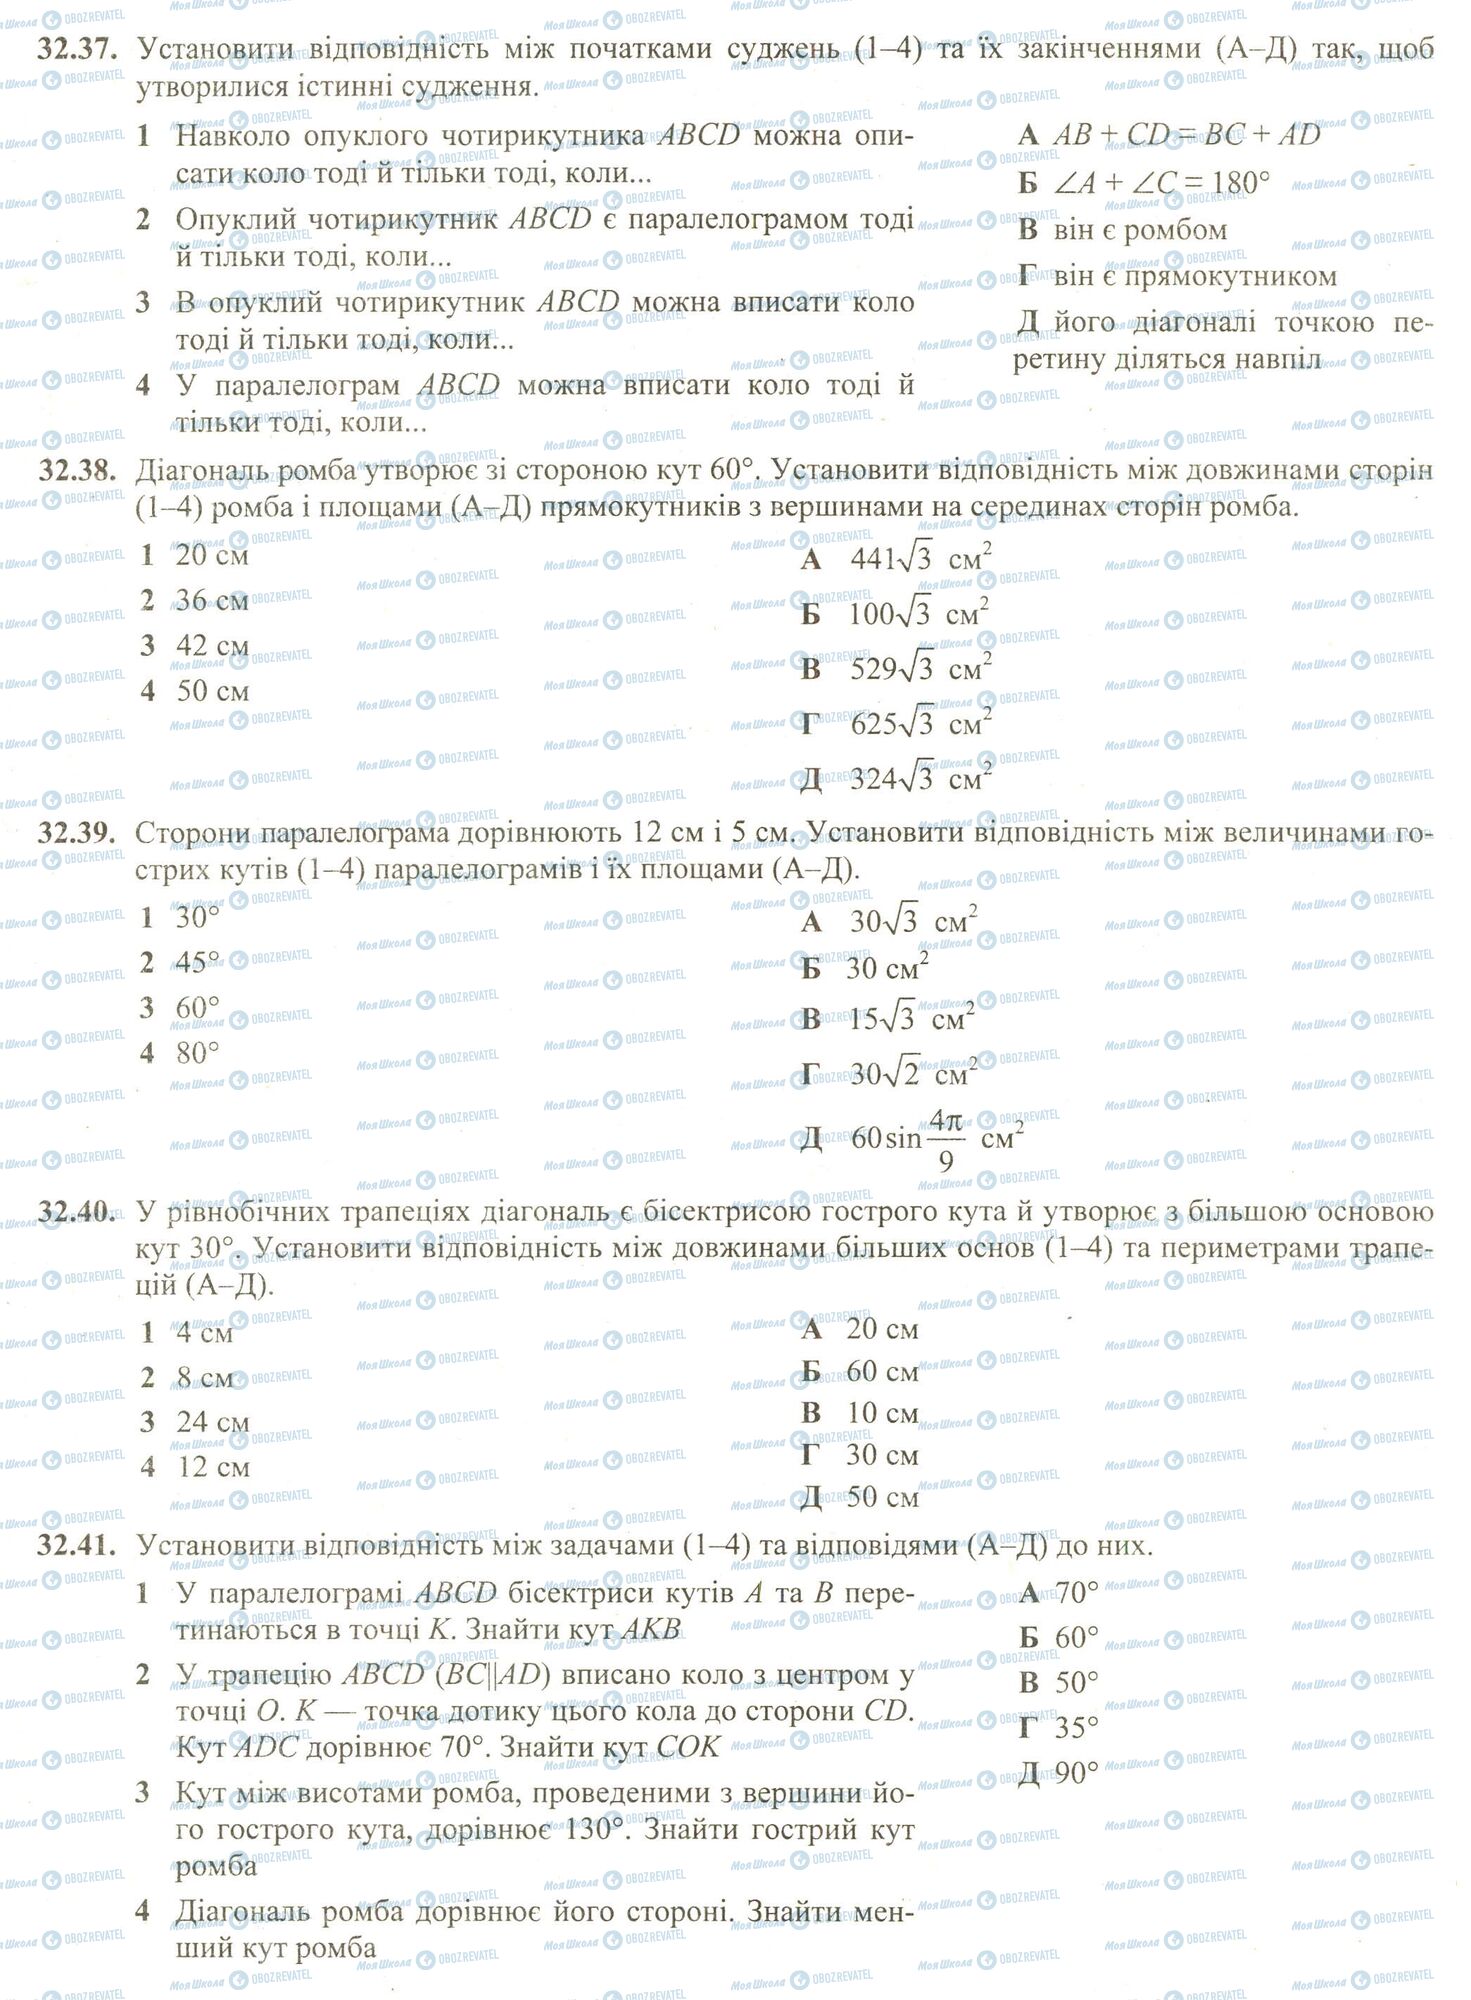 ЗНО Математика 11 клас сторінка 37-41